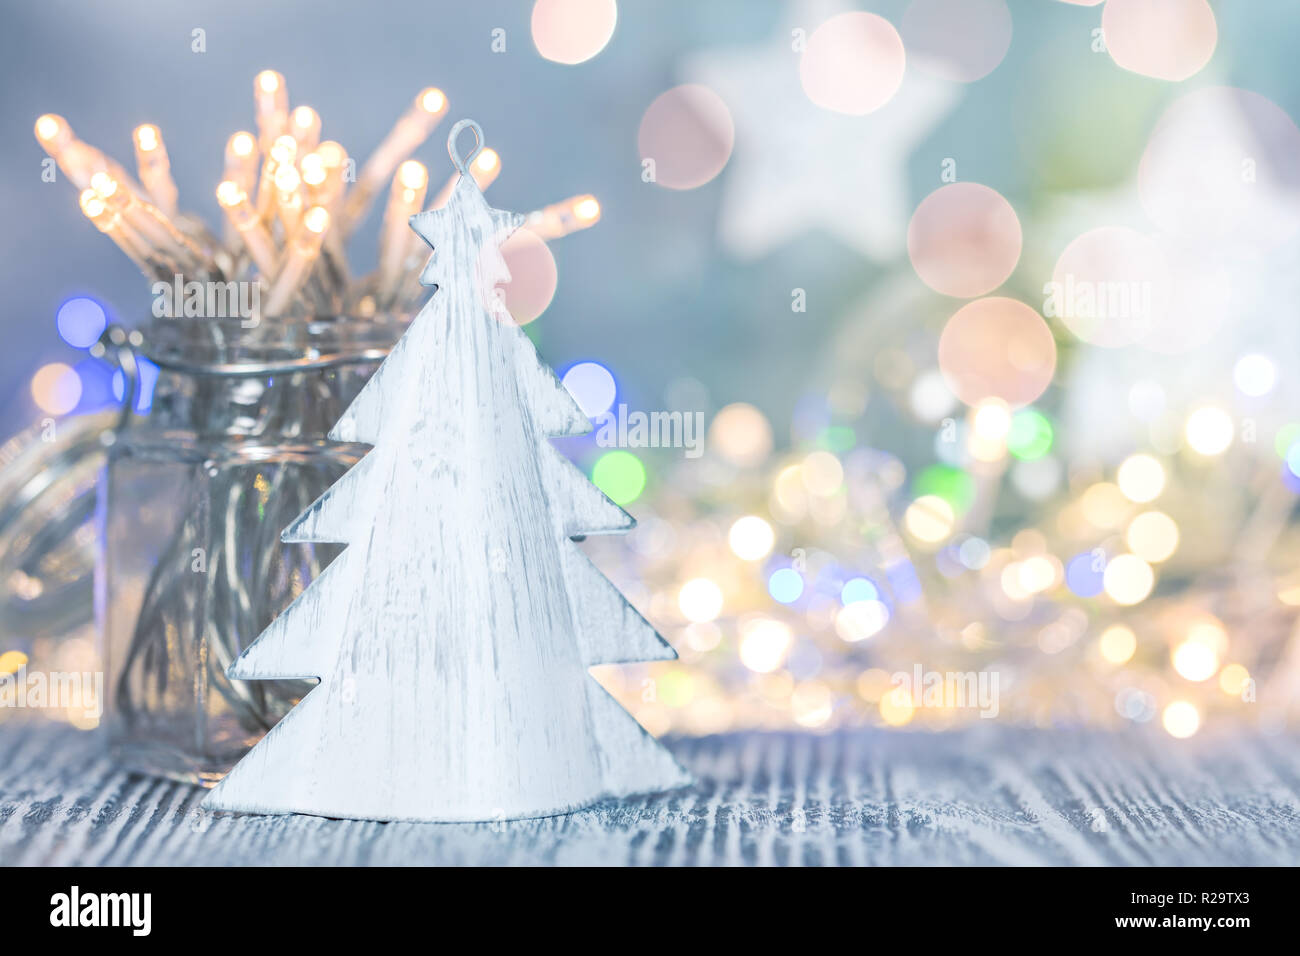 Weihnachten Tannenbaum mit Girlande Lichter auf festliche verschwommenen Hintergrund Stockfoto